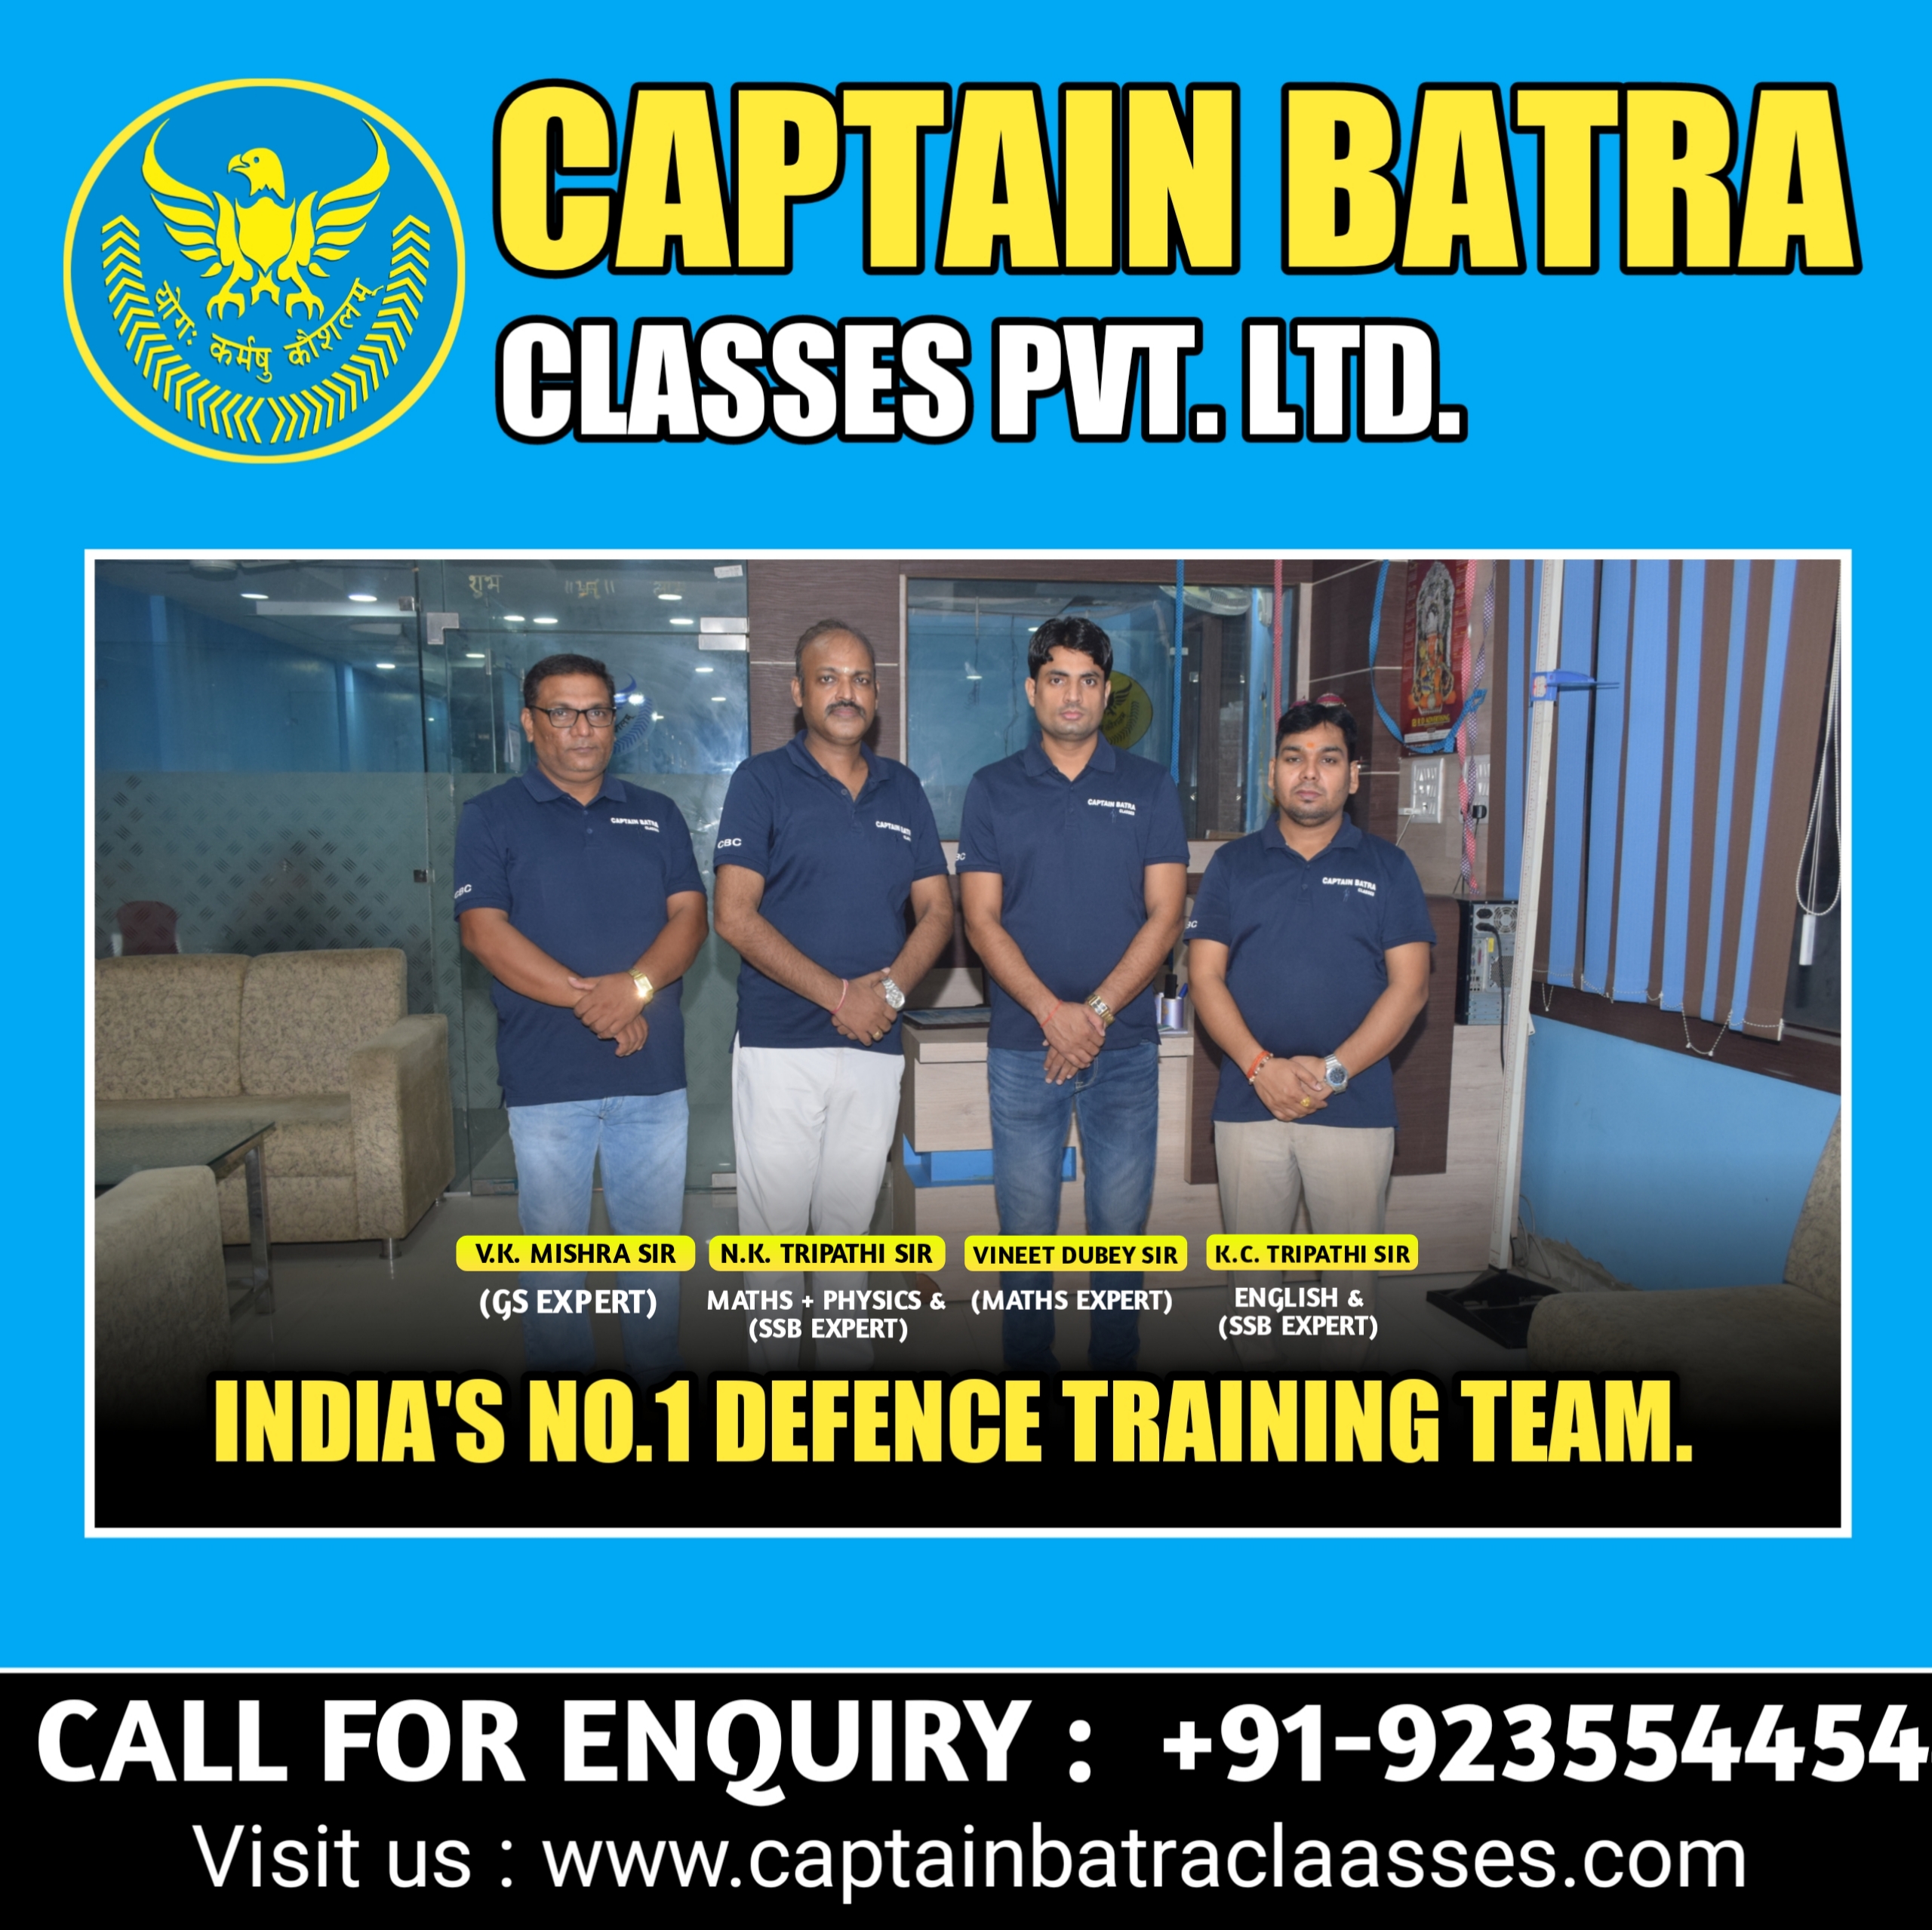 Captain Batra Classes Academic Council